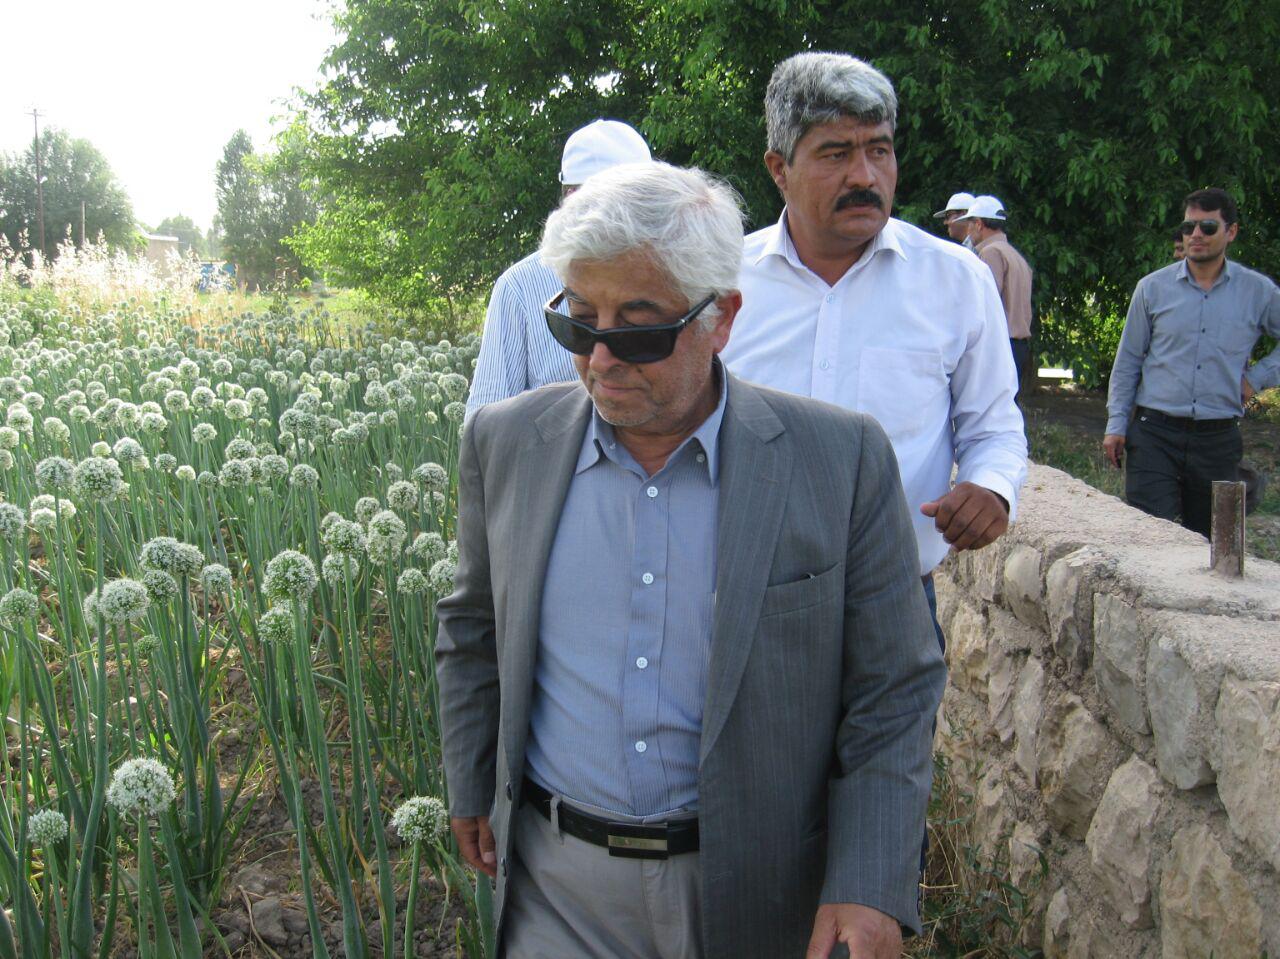 مشاور وزیر جهاد كشاورزی: باید جلو واردات 4 میلیارد دلاری دانه های روغنی را گرفت